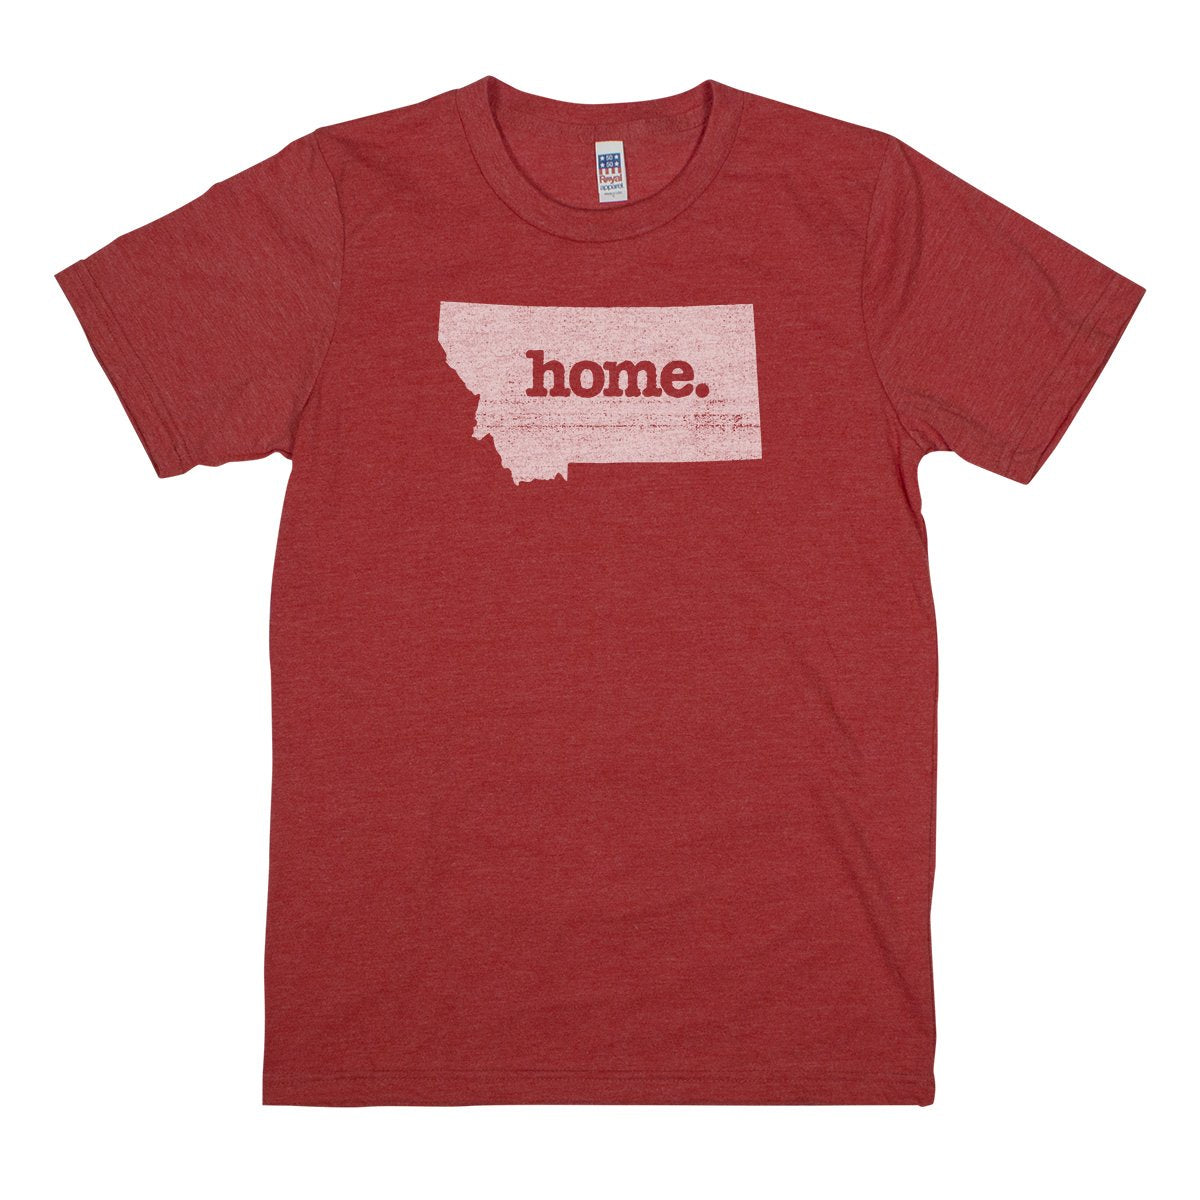 home. Men’s Unisex T-Shirt - Connecticut